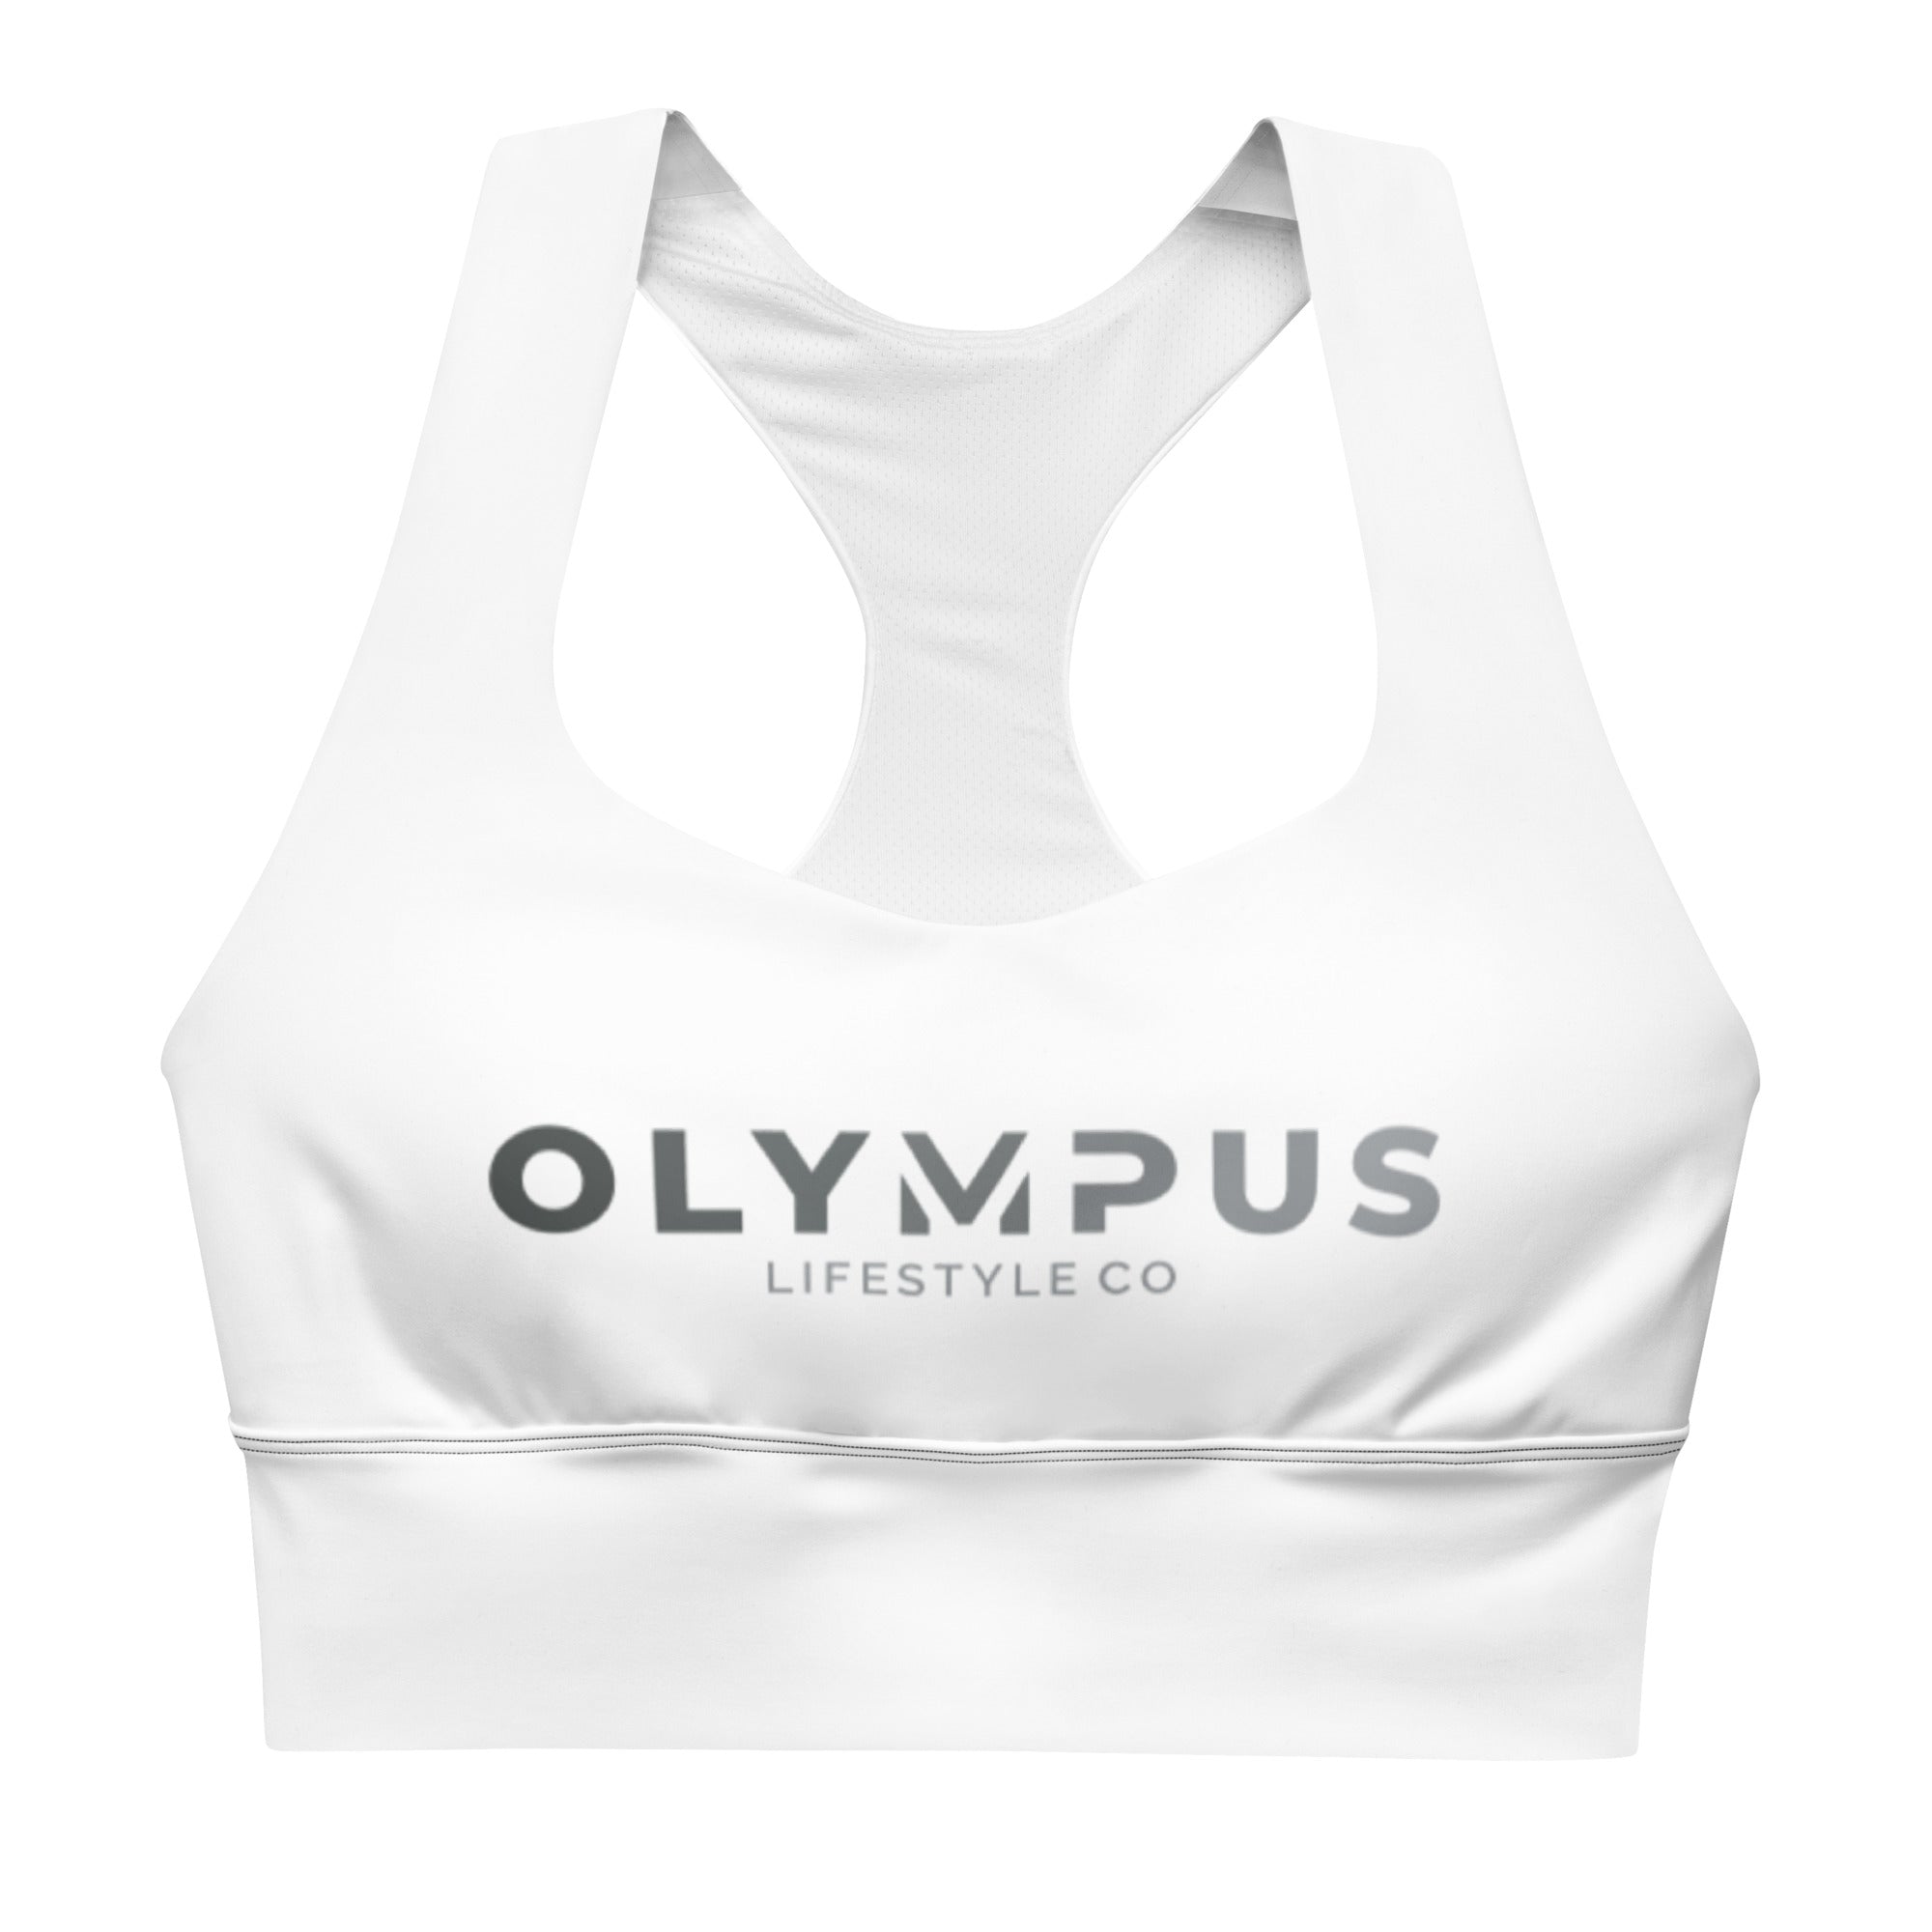 Olympus Women's White Longline Sports Bra Grey Text Logo